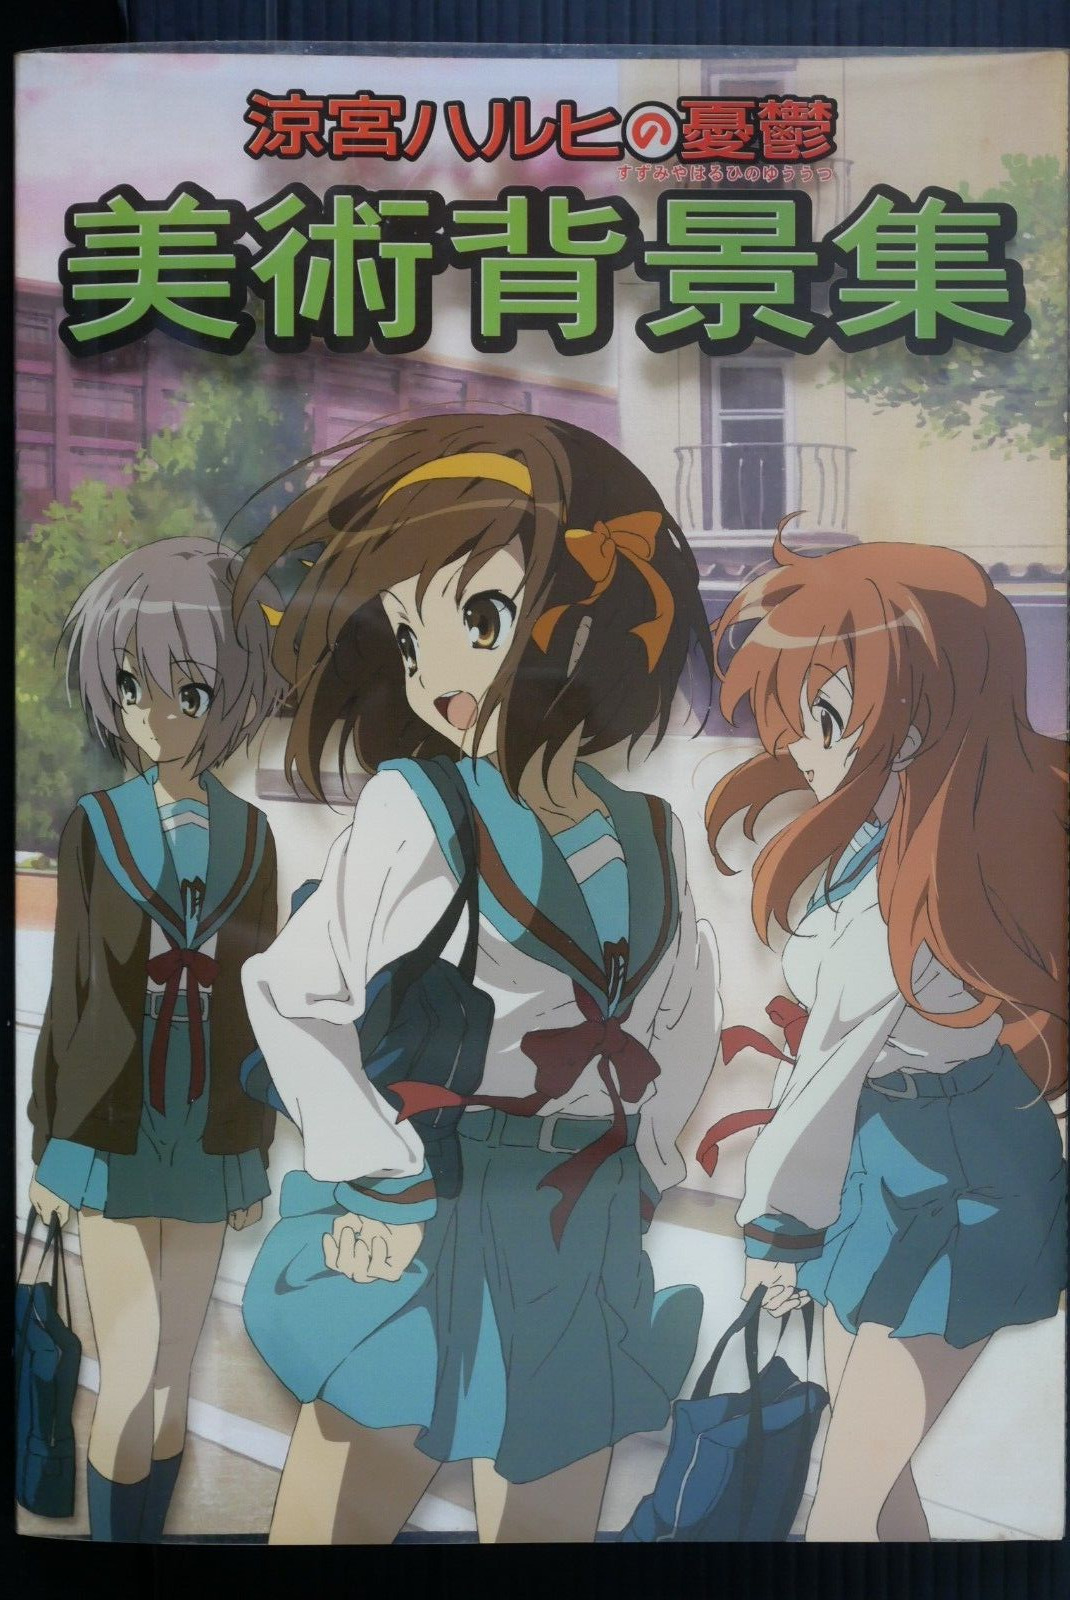 JAPAN TV Animation The Melancholy of Haruhi Suzumiya Background Art Book (Damage